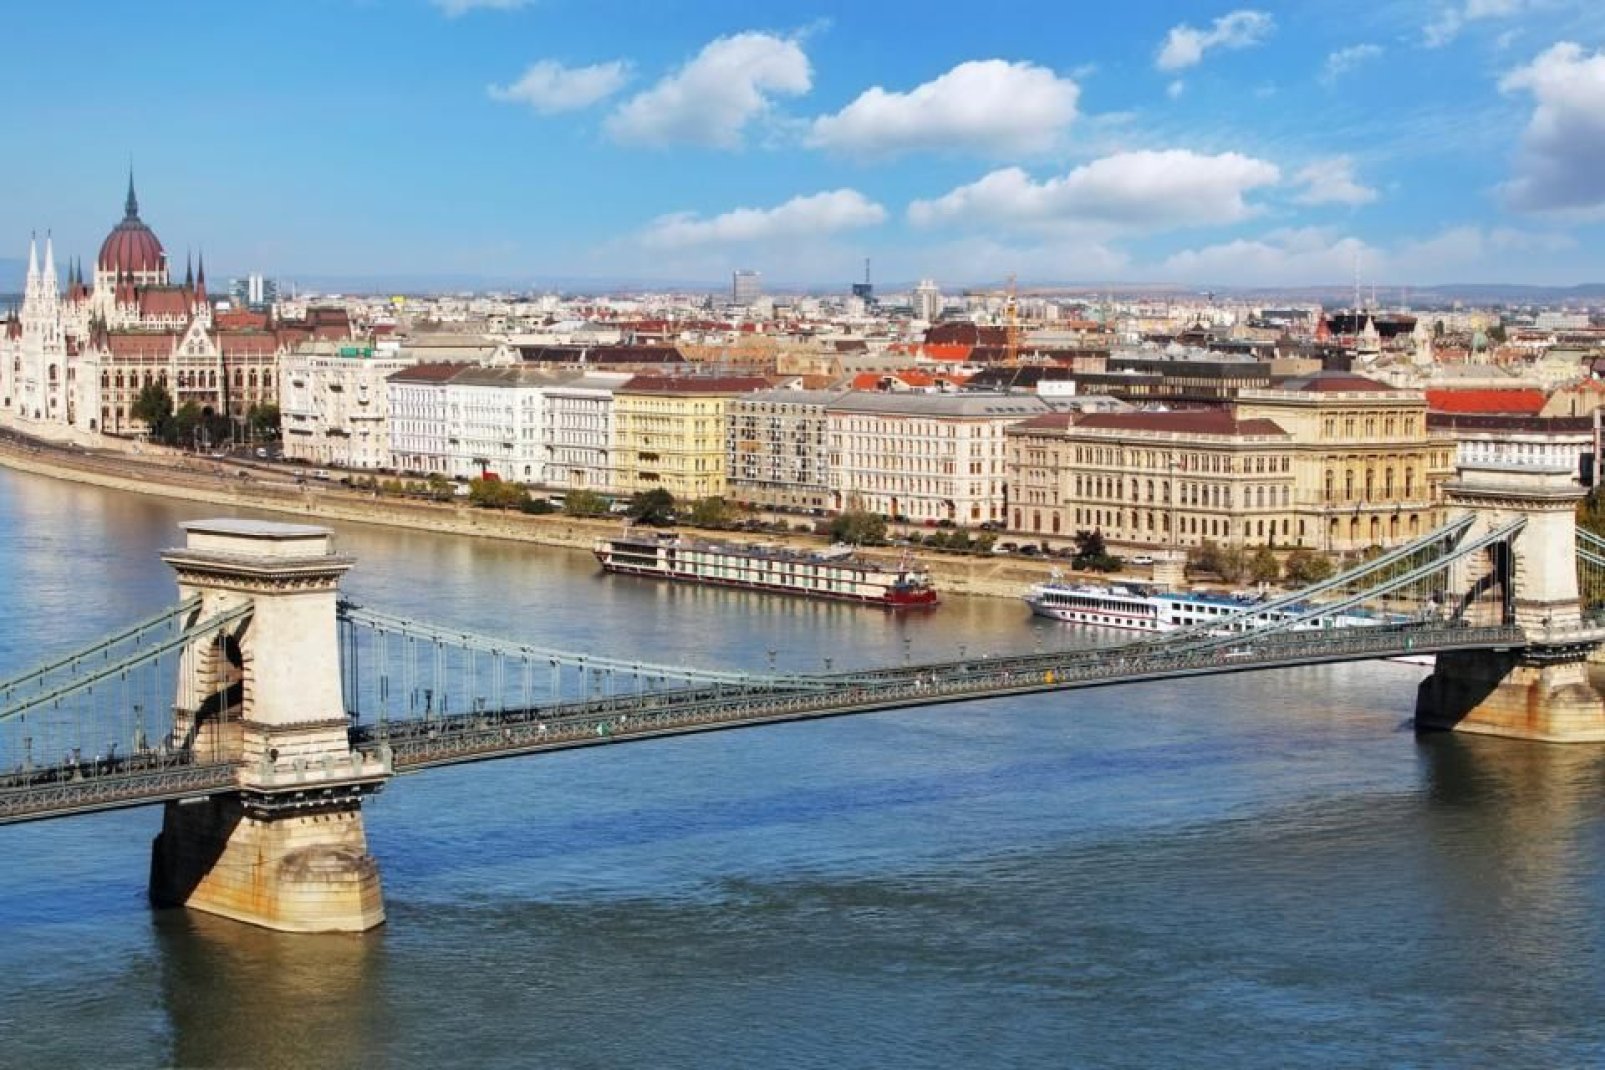 Die Kettenbrücke genannt Széchenyi Lánchíd wurde im Jahre 1873 eingeweiht, um die Vereinigung der Dörfer Buda und Pest zu feiern.